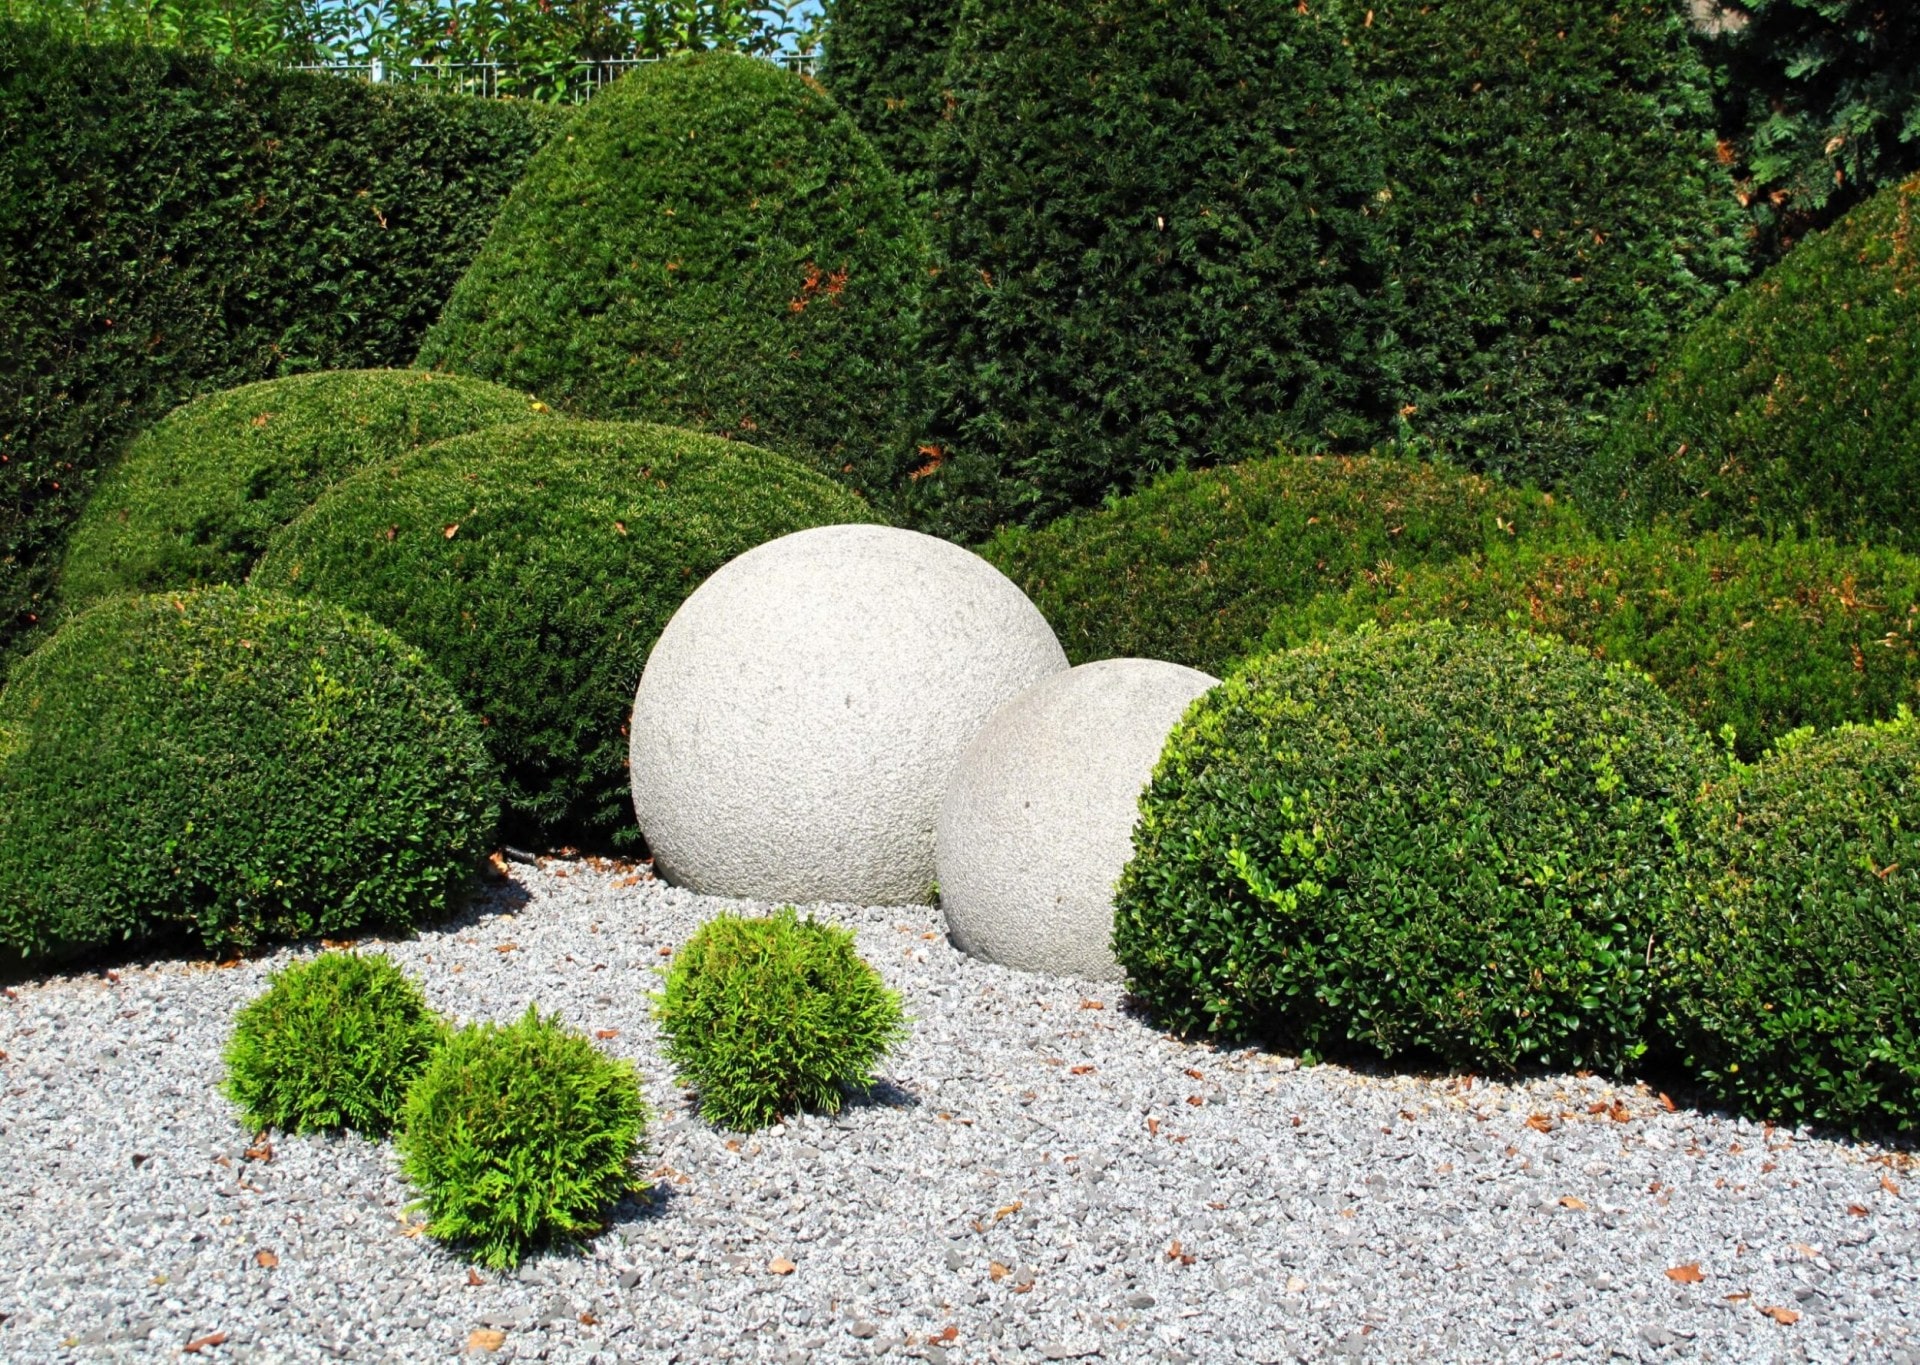 Round topiary bushes next to round white rocks